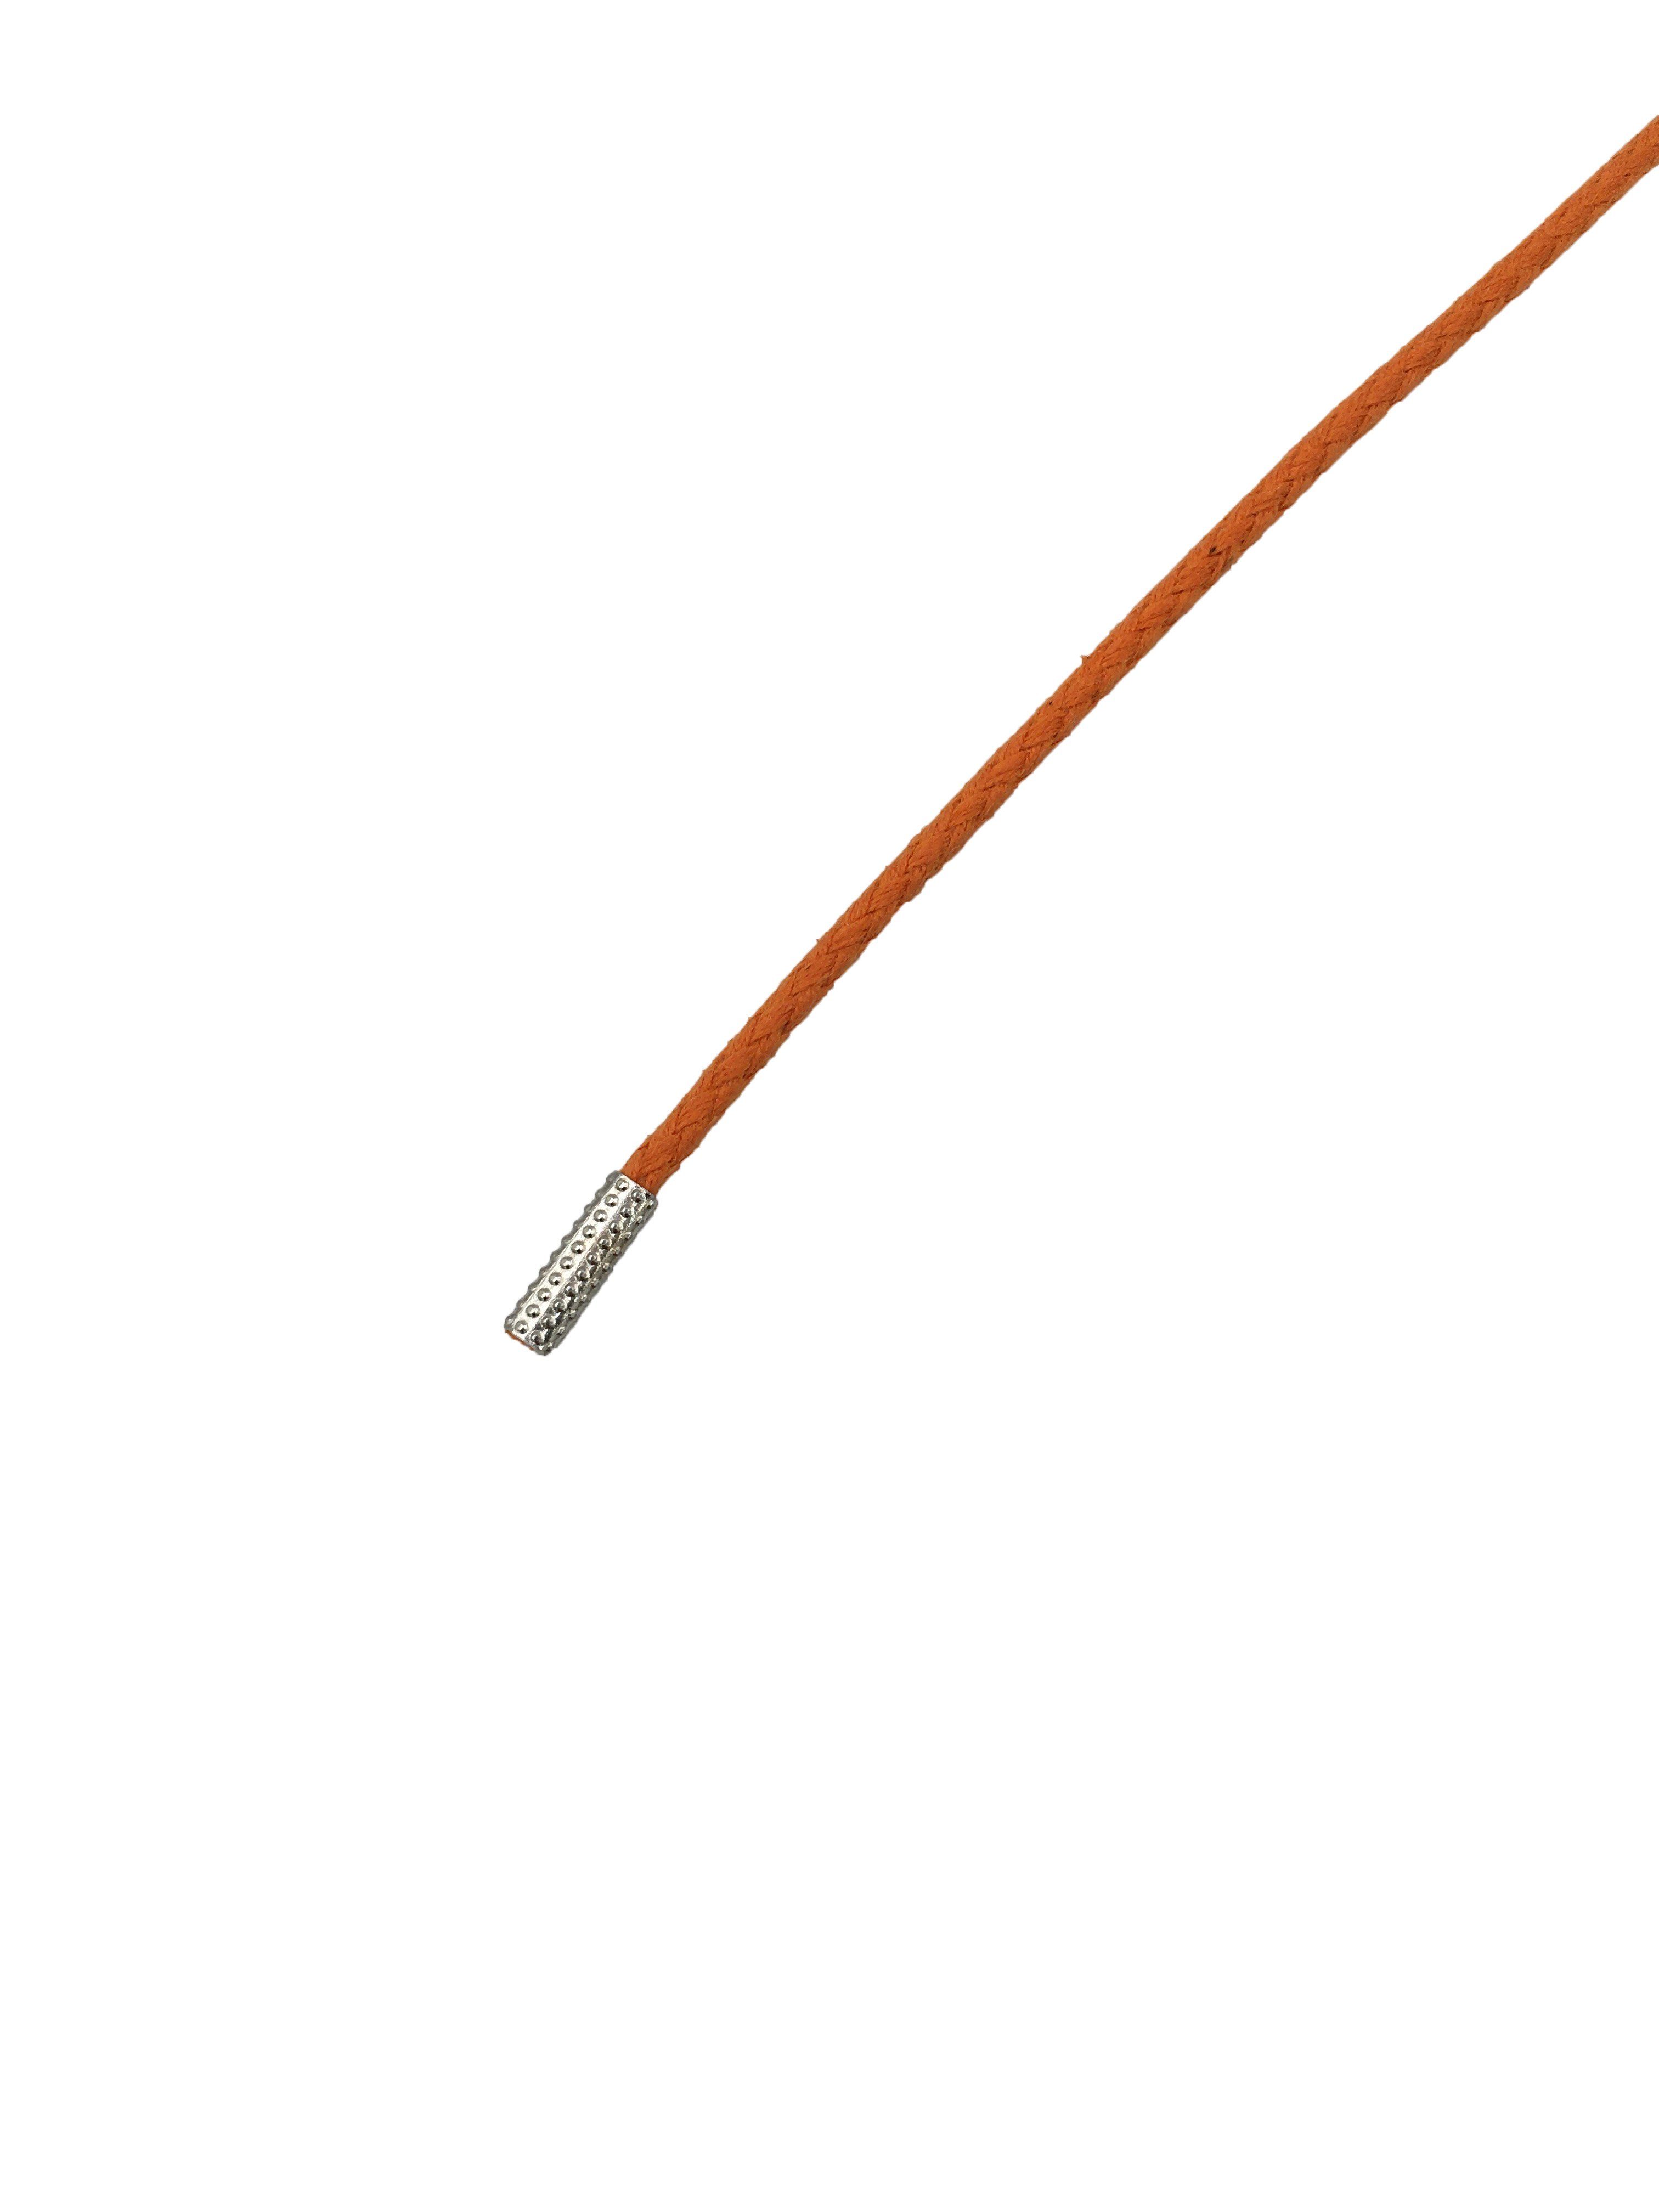 Rema Schnürsenkel Rema Schnürsenkel Orange - rund - gewachst - Kordel - ca. 2,5 mm dünn für Sie nach Wunschlänge geschnitten und mit Metallenden versehen | Schnürsenkel